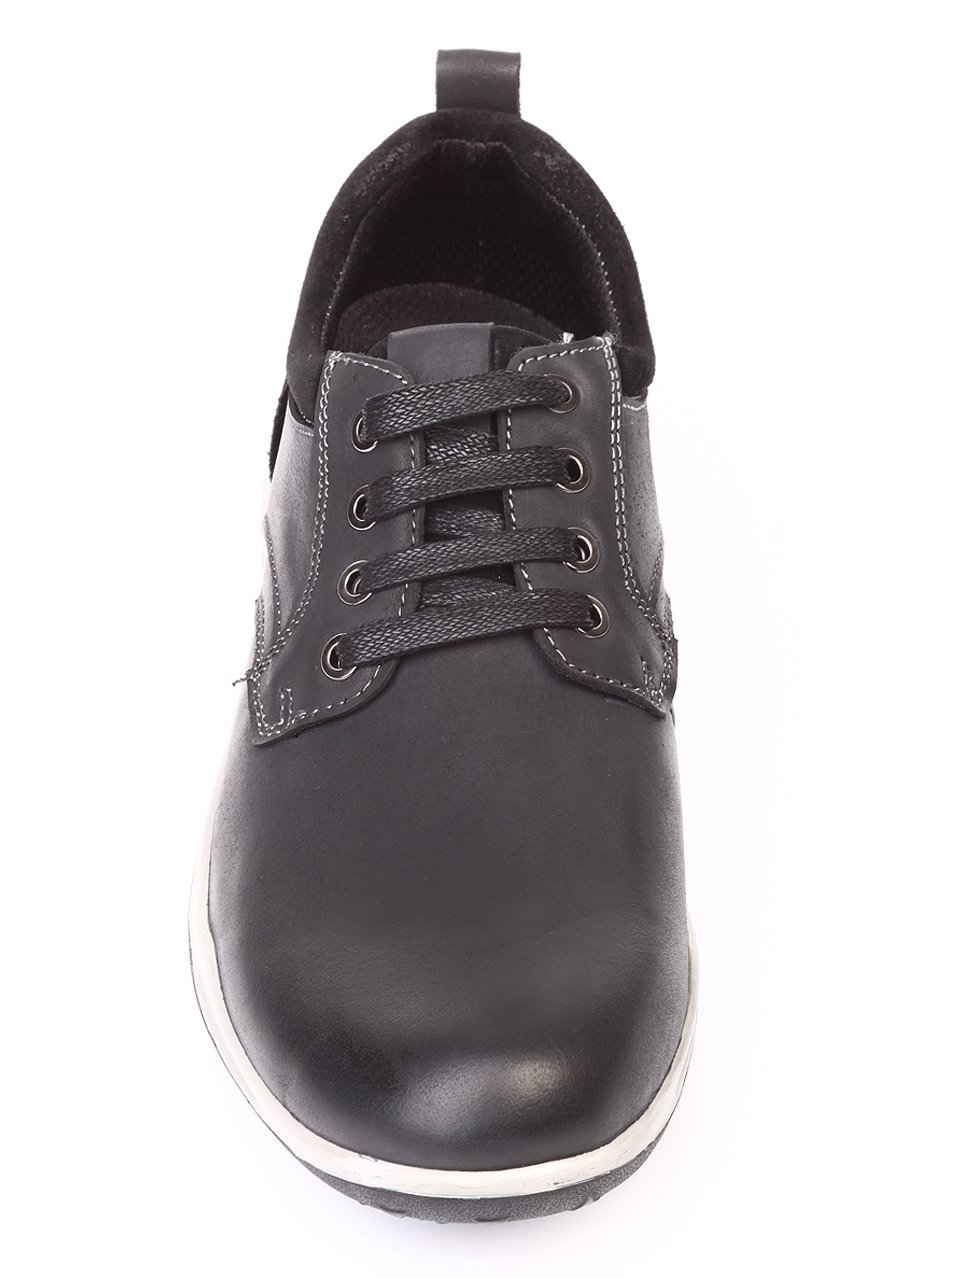 Ежедневни мъжки обувки от естествен набук 7N-17788 black